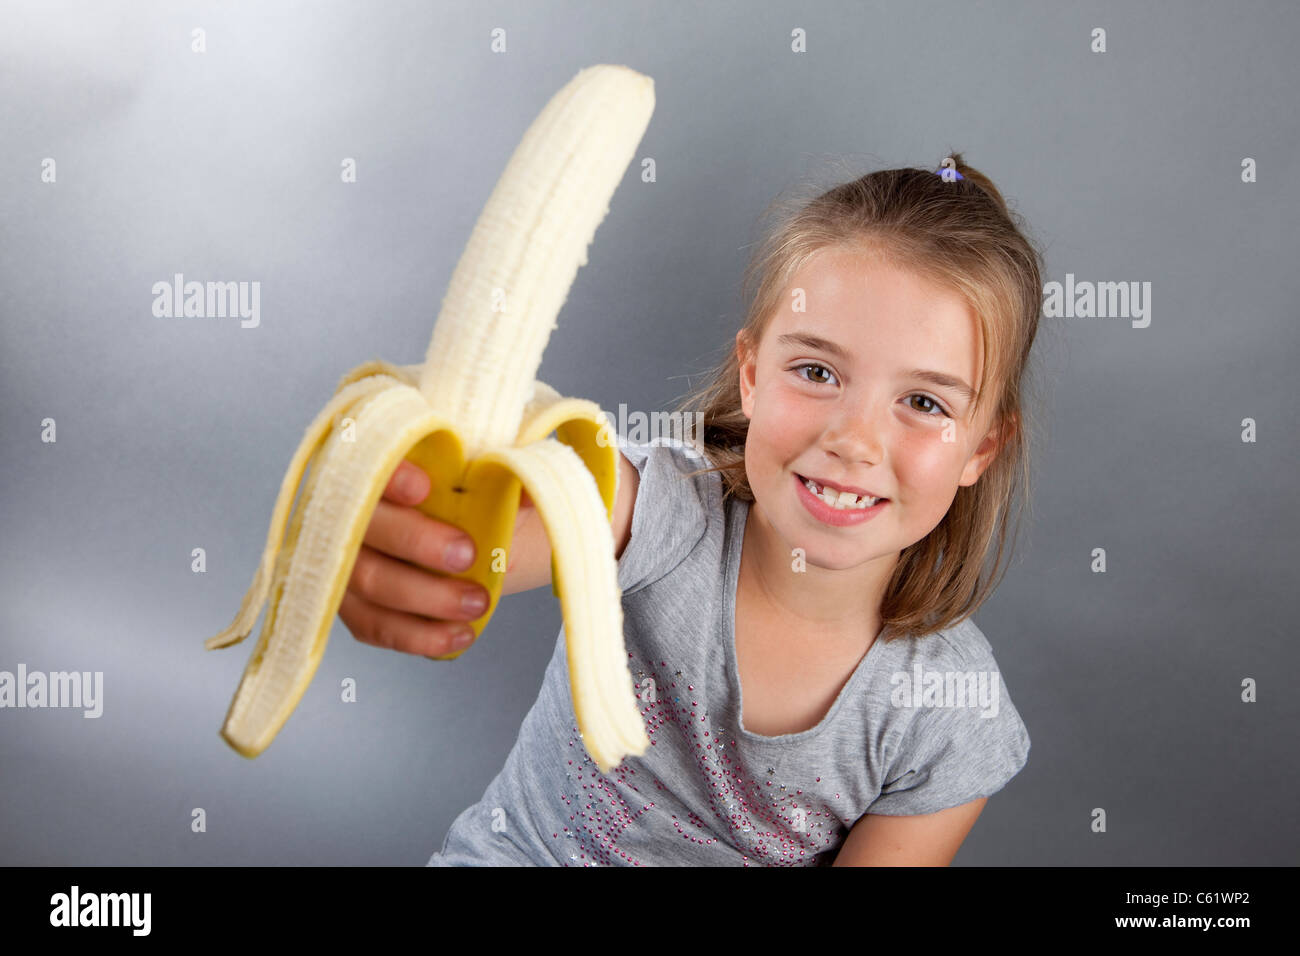 Girl with sexy figure saddled banana